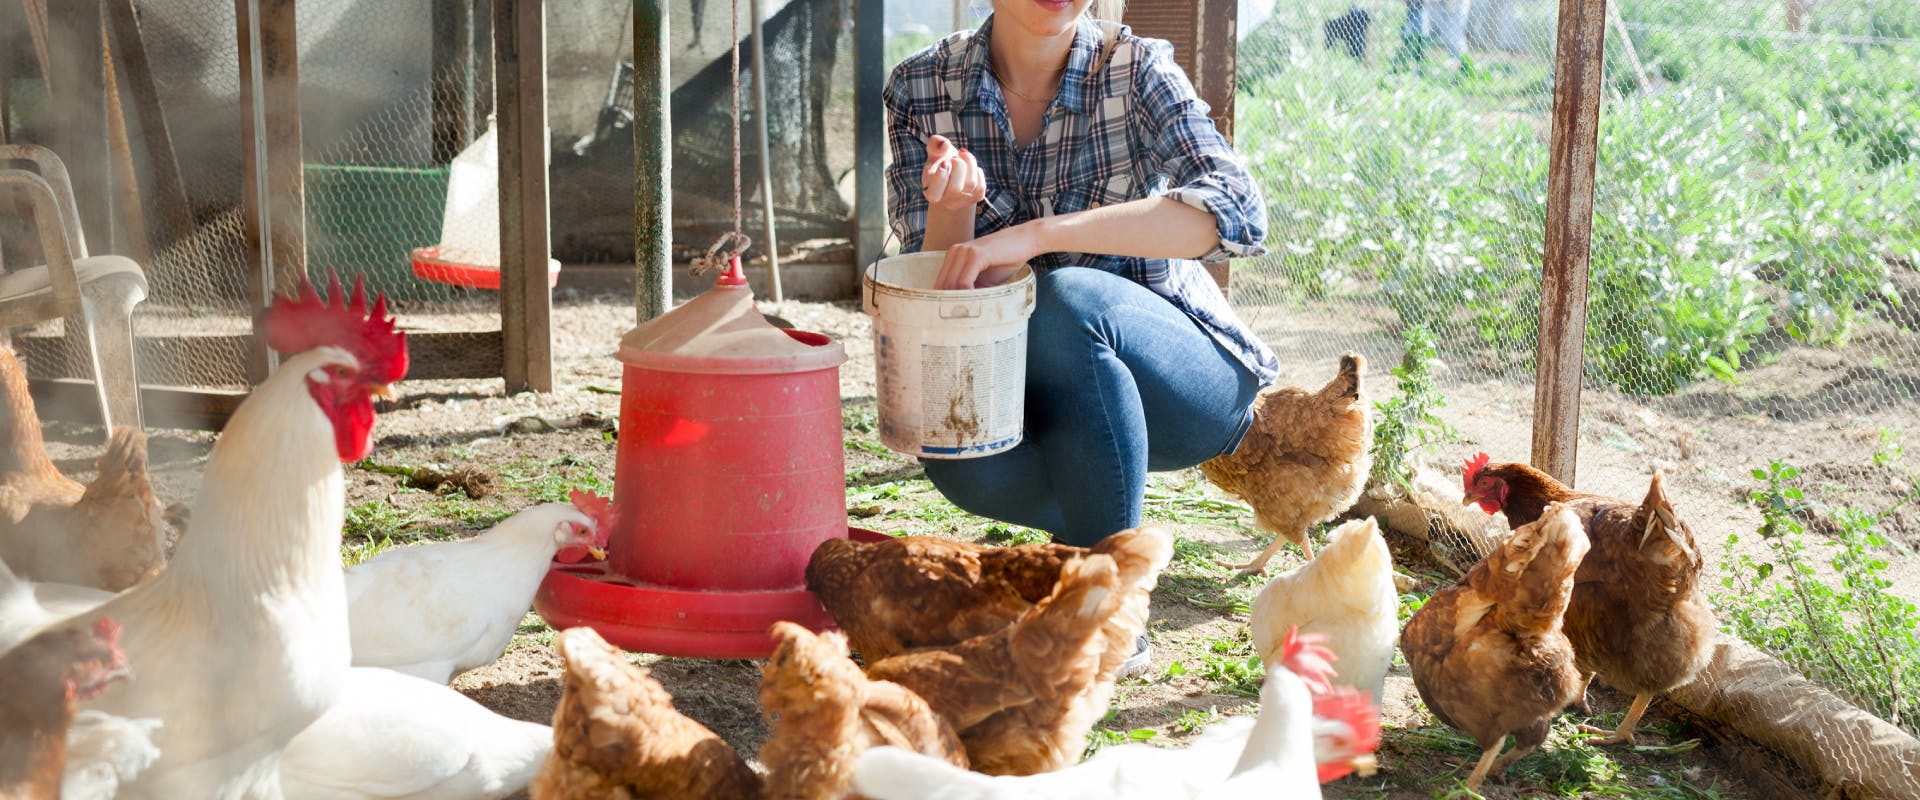 a chicken sitter feeding chickens inside a chicken coop